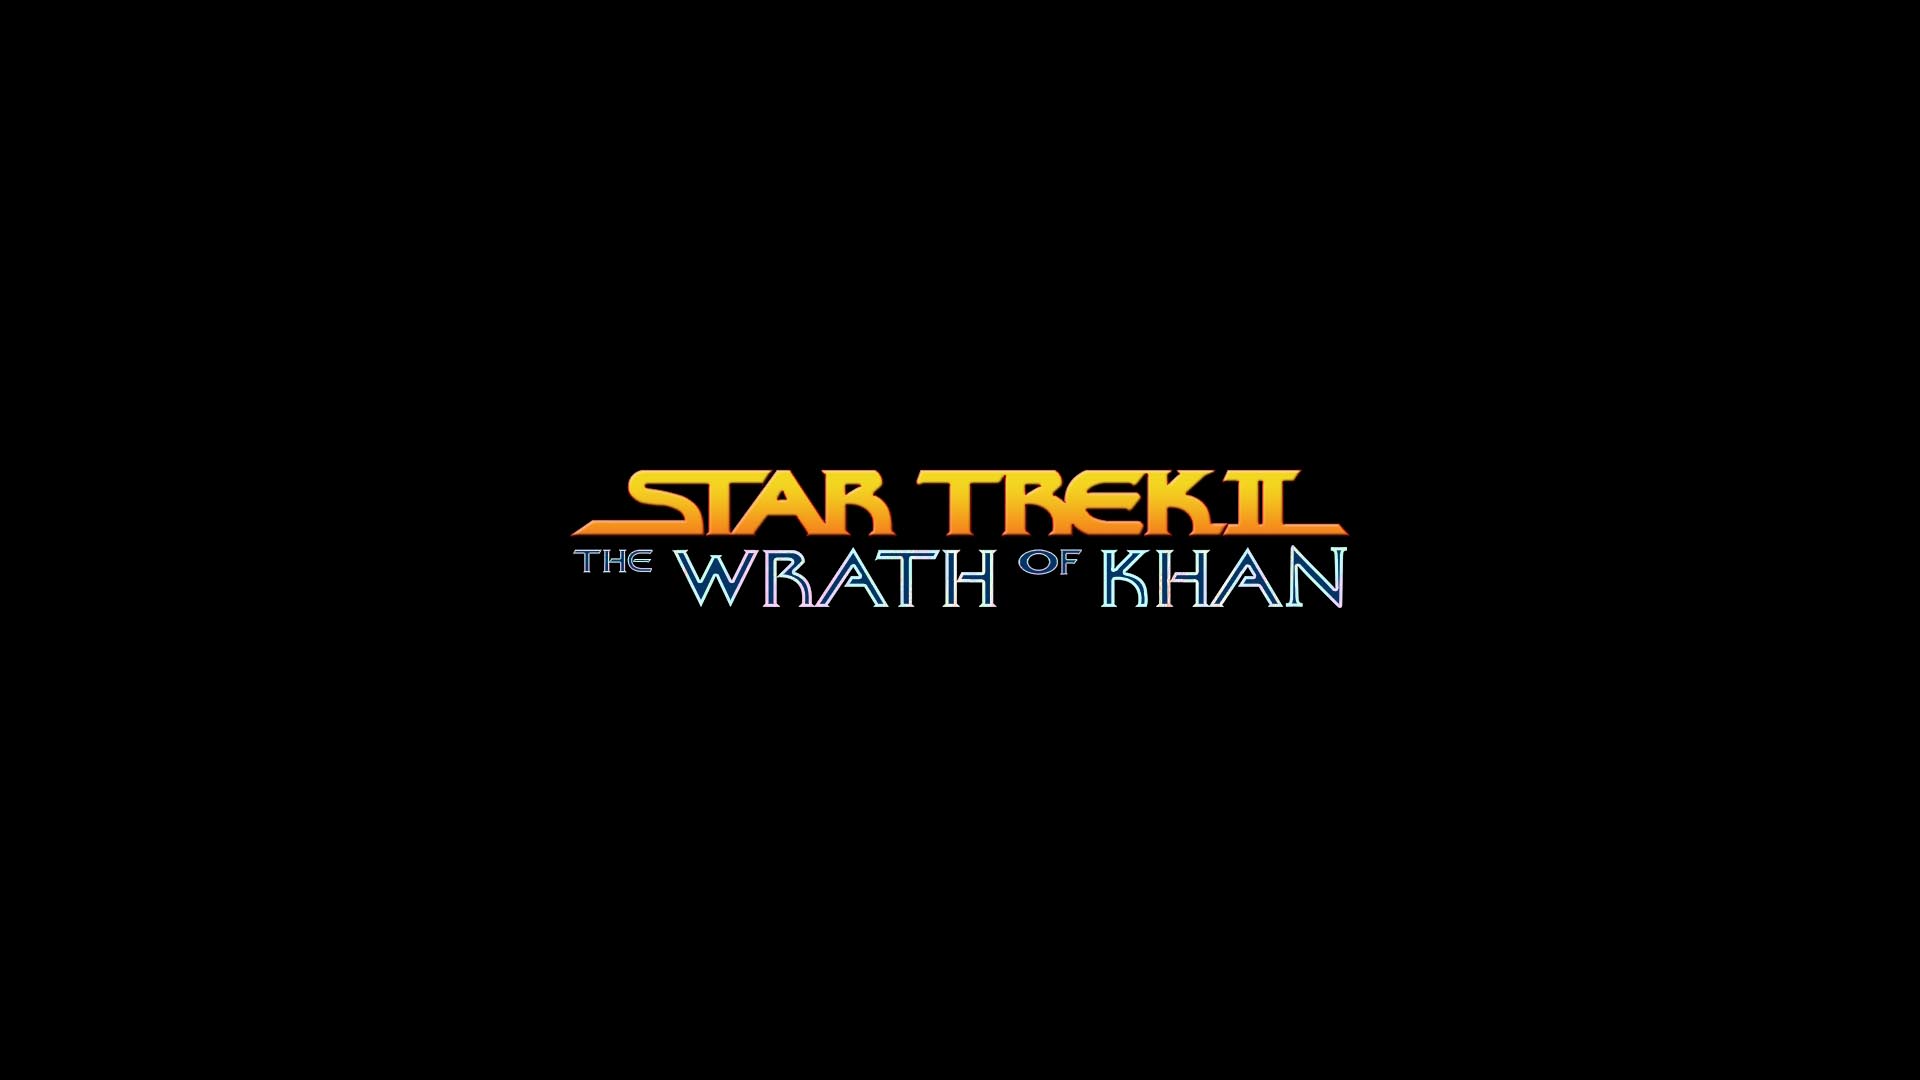 movie, star trek ii: the wrath of khan, star trek 2160p